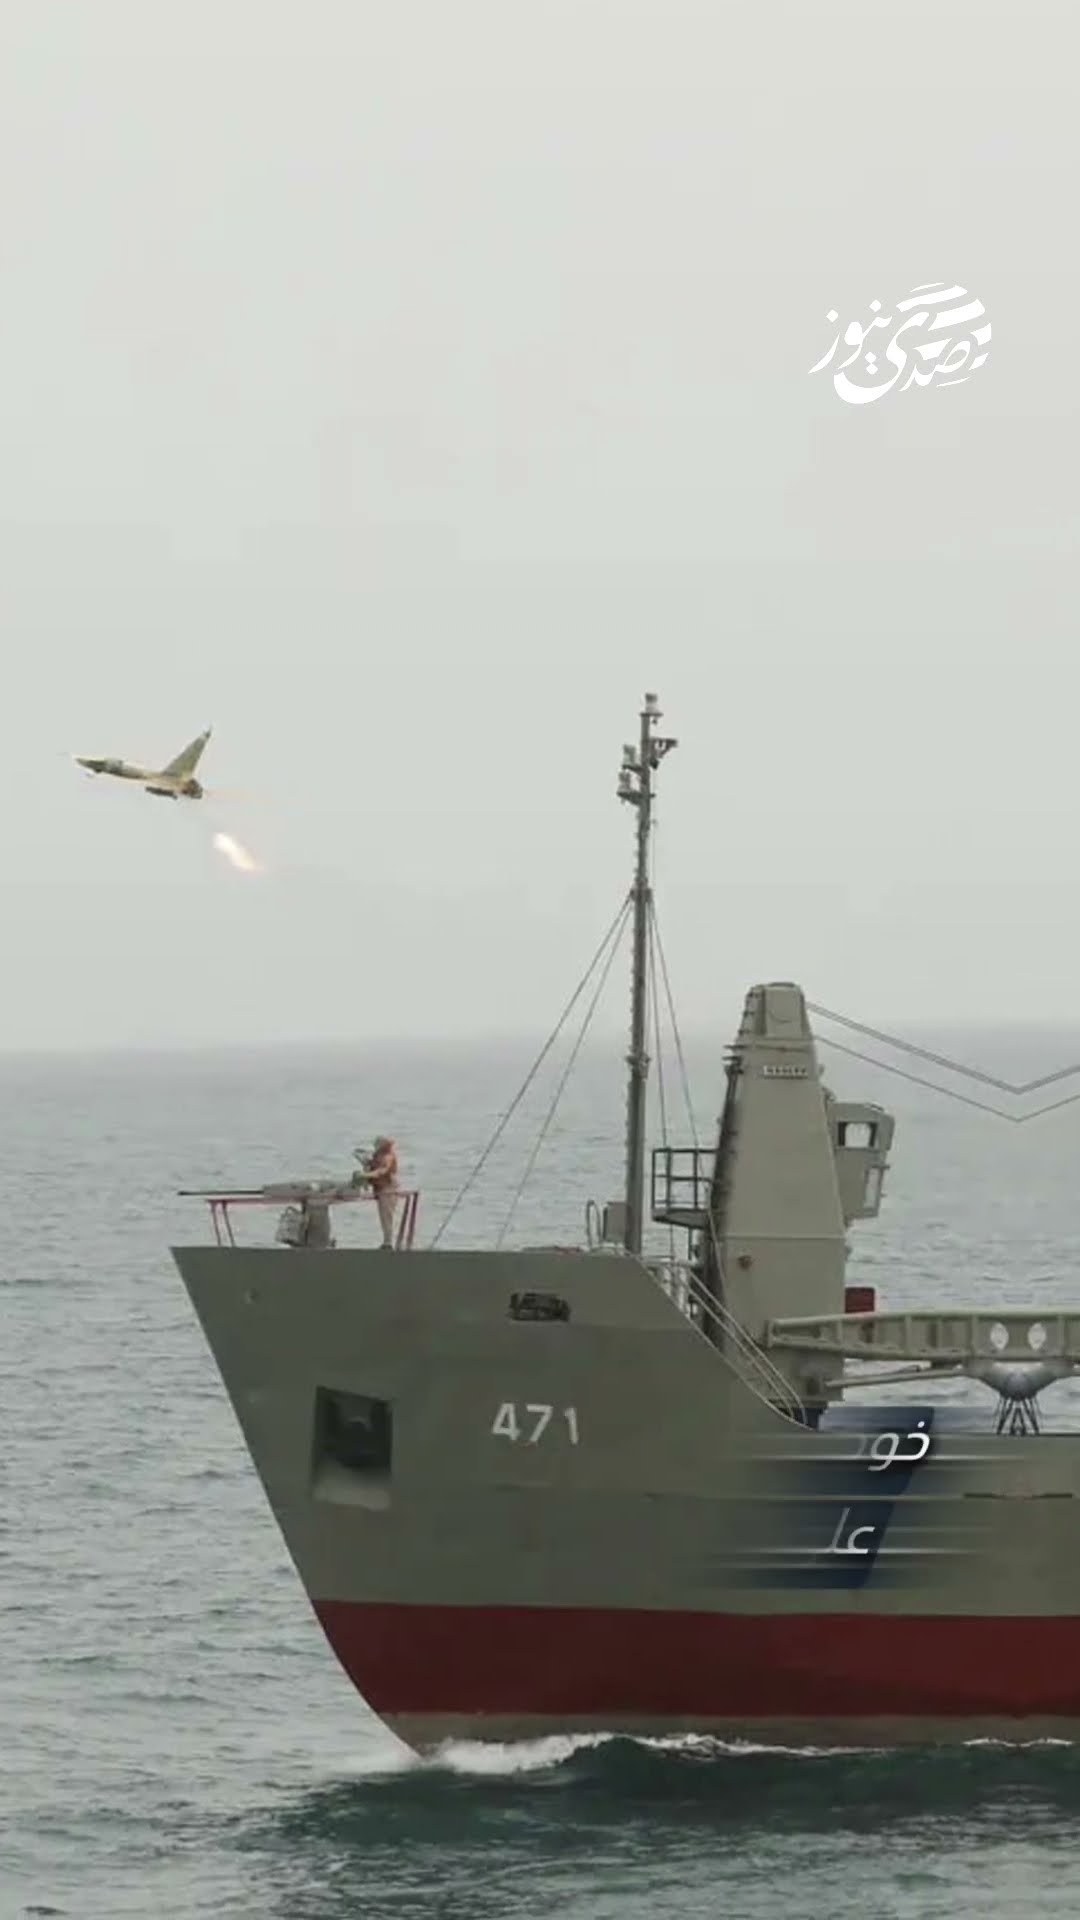 بلومبرغ: سفينة التجسس الإيرانية "بهشاد" غادرت موقعها بالقرب من سواحل اليمن في البحر الأحمر